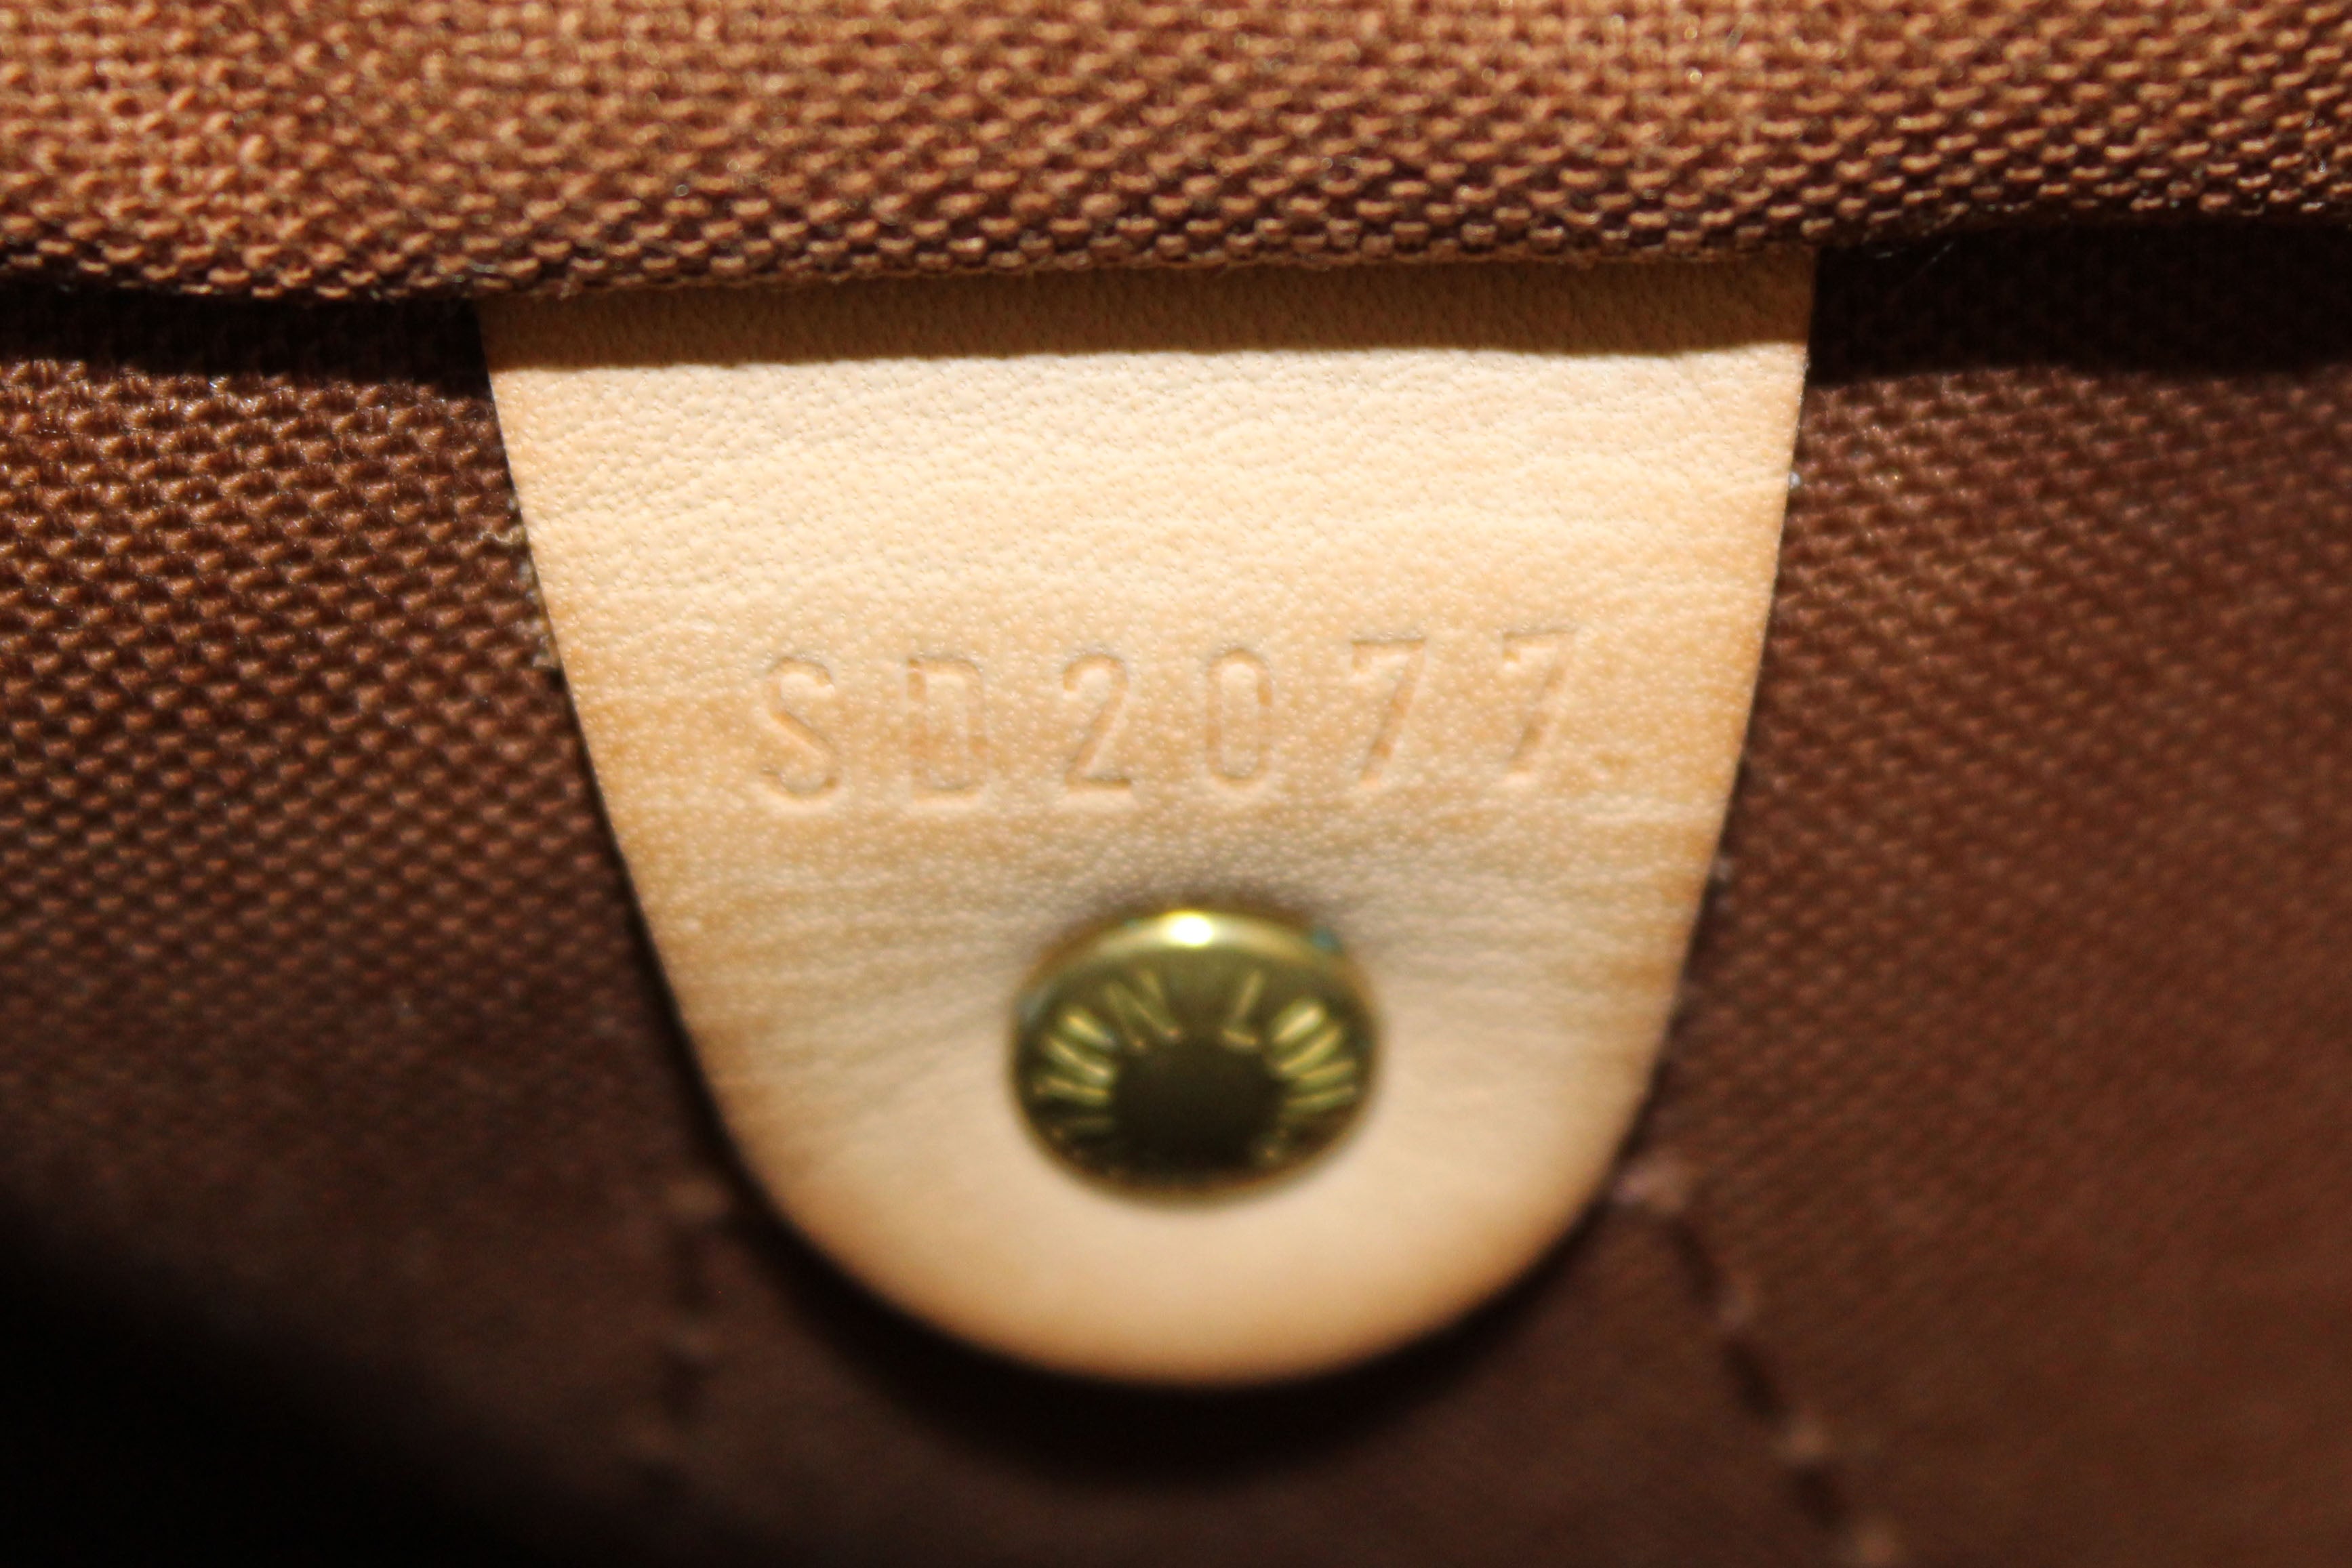 Auth Louis Vuitton Vintage Monogram Speedy 25 Hand Bag 0K180010n"